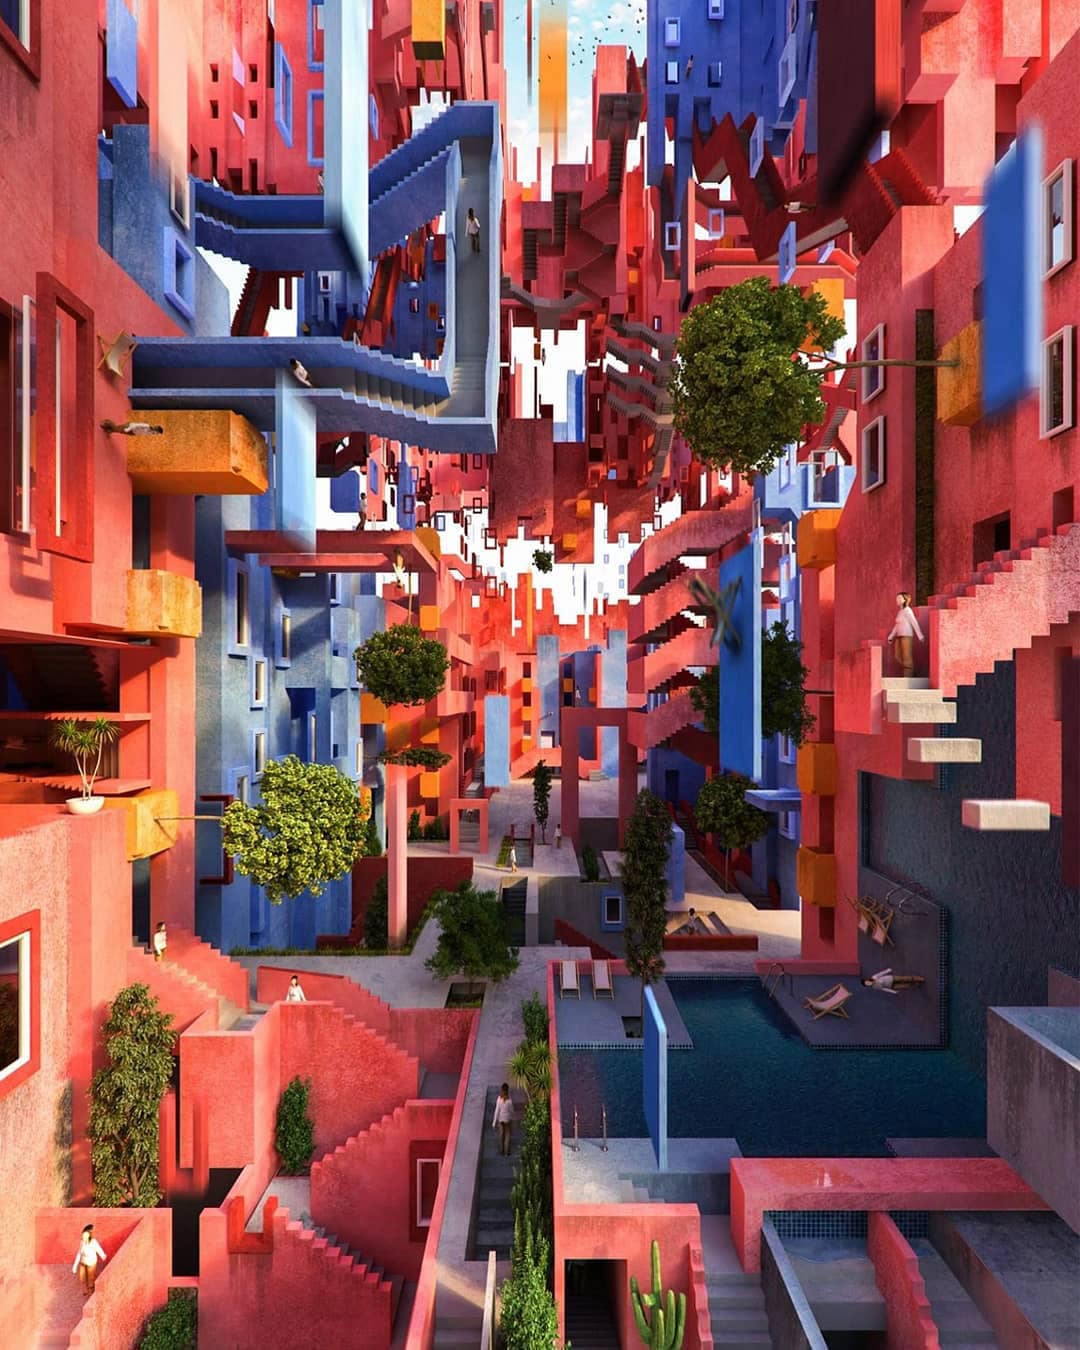 Utopian render of an Escher-House-of-Stairs like world.